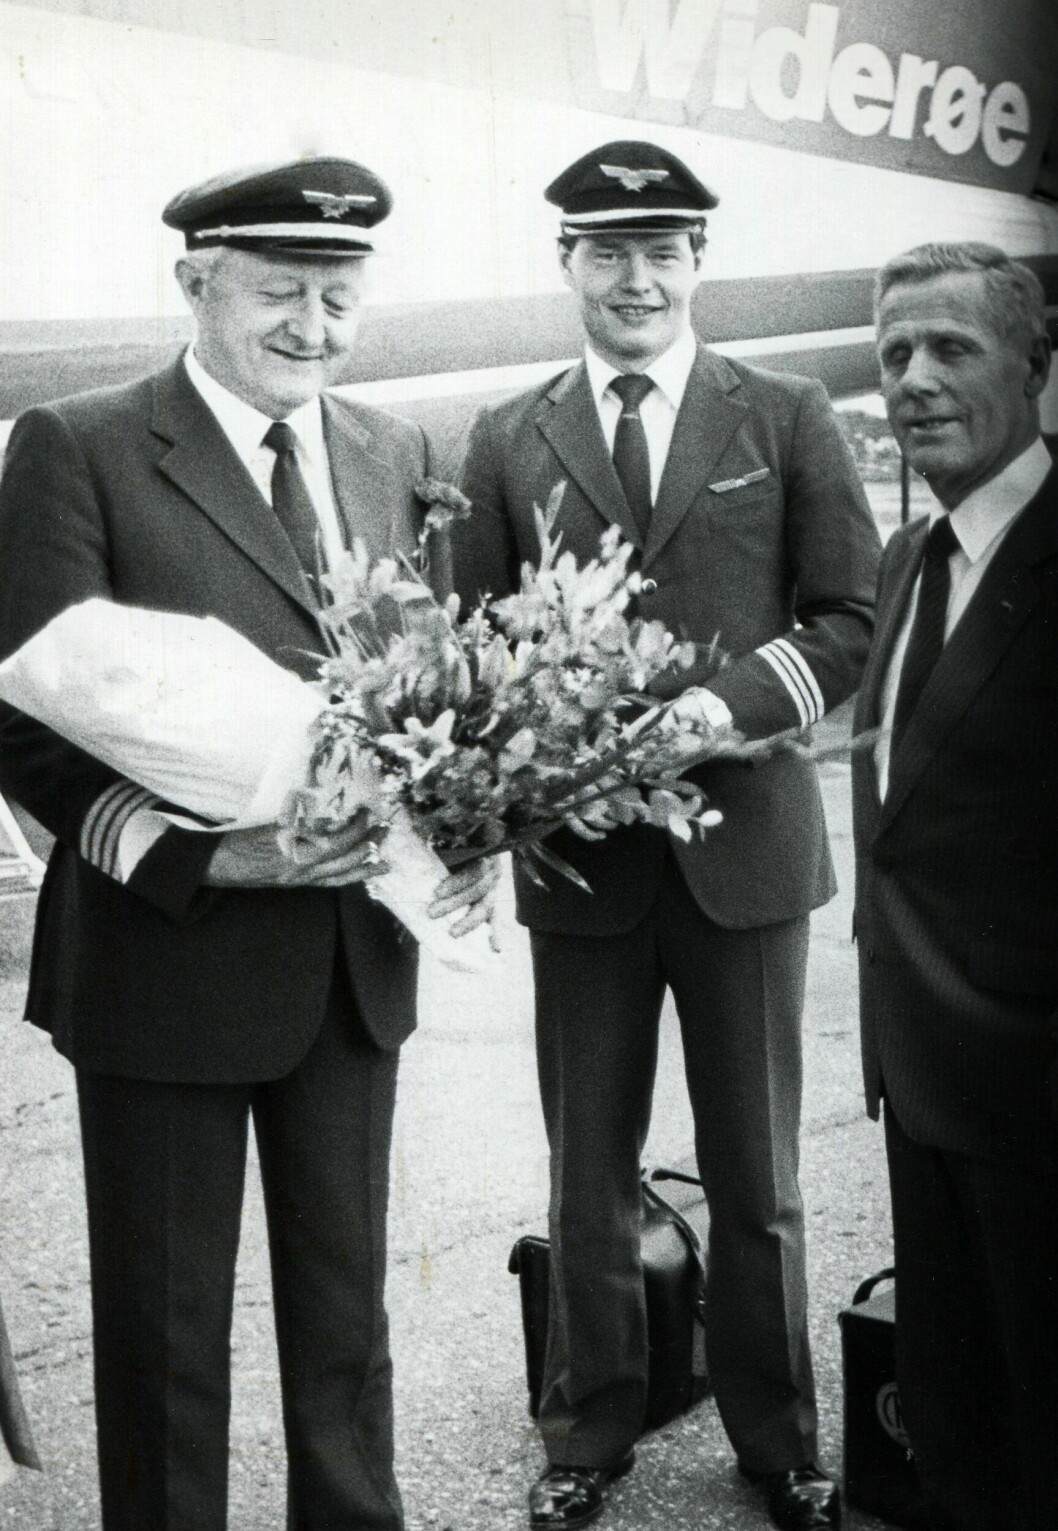 En lang flygerkarriere var over 25. april 1986. Erik Langset med sønnen Jon som styrmann, overrekkes blomster av Widerøes direktør Peter L. Nissen etter landing. Foto: Via Ulf Larstuvold.